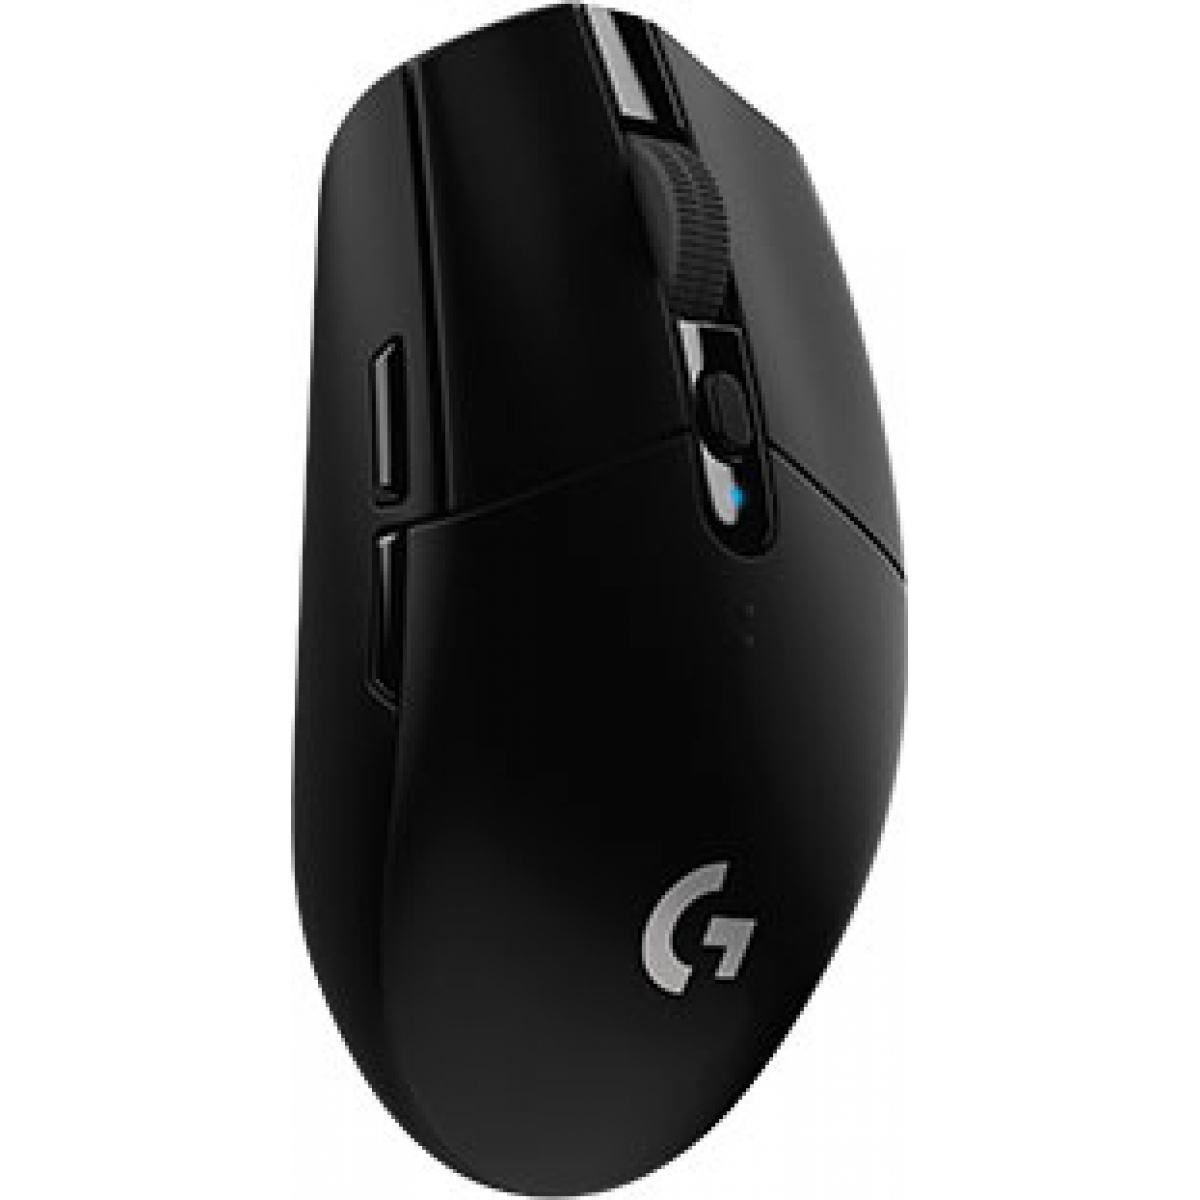 Mouse Gamer Logitech Llightspeed G305 6 Botões 12000 DPI USB Black, 910-005281